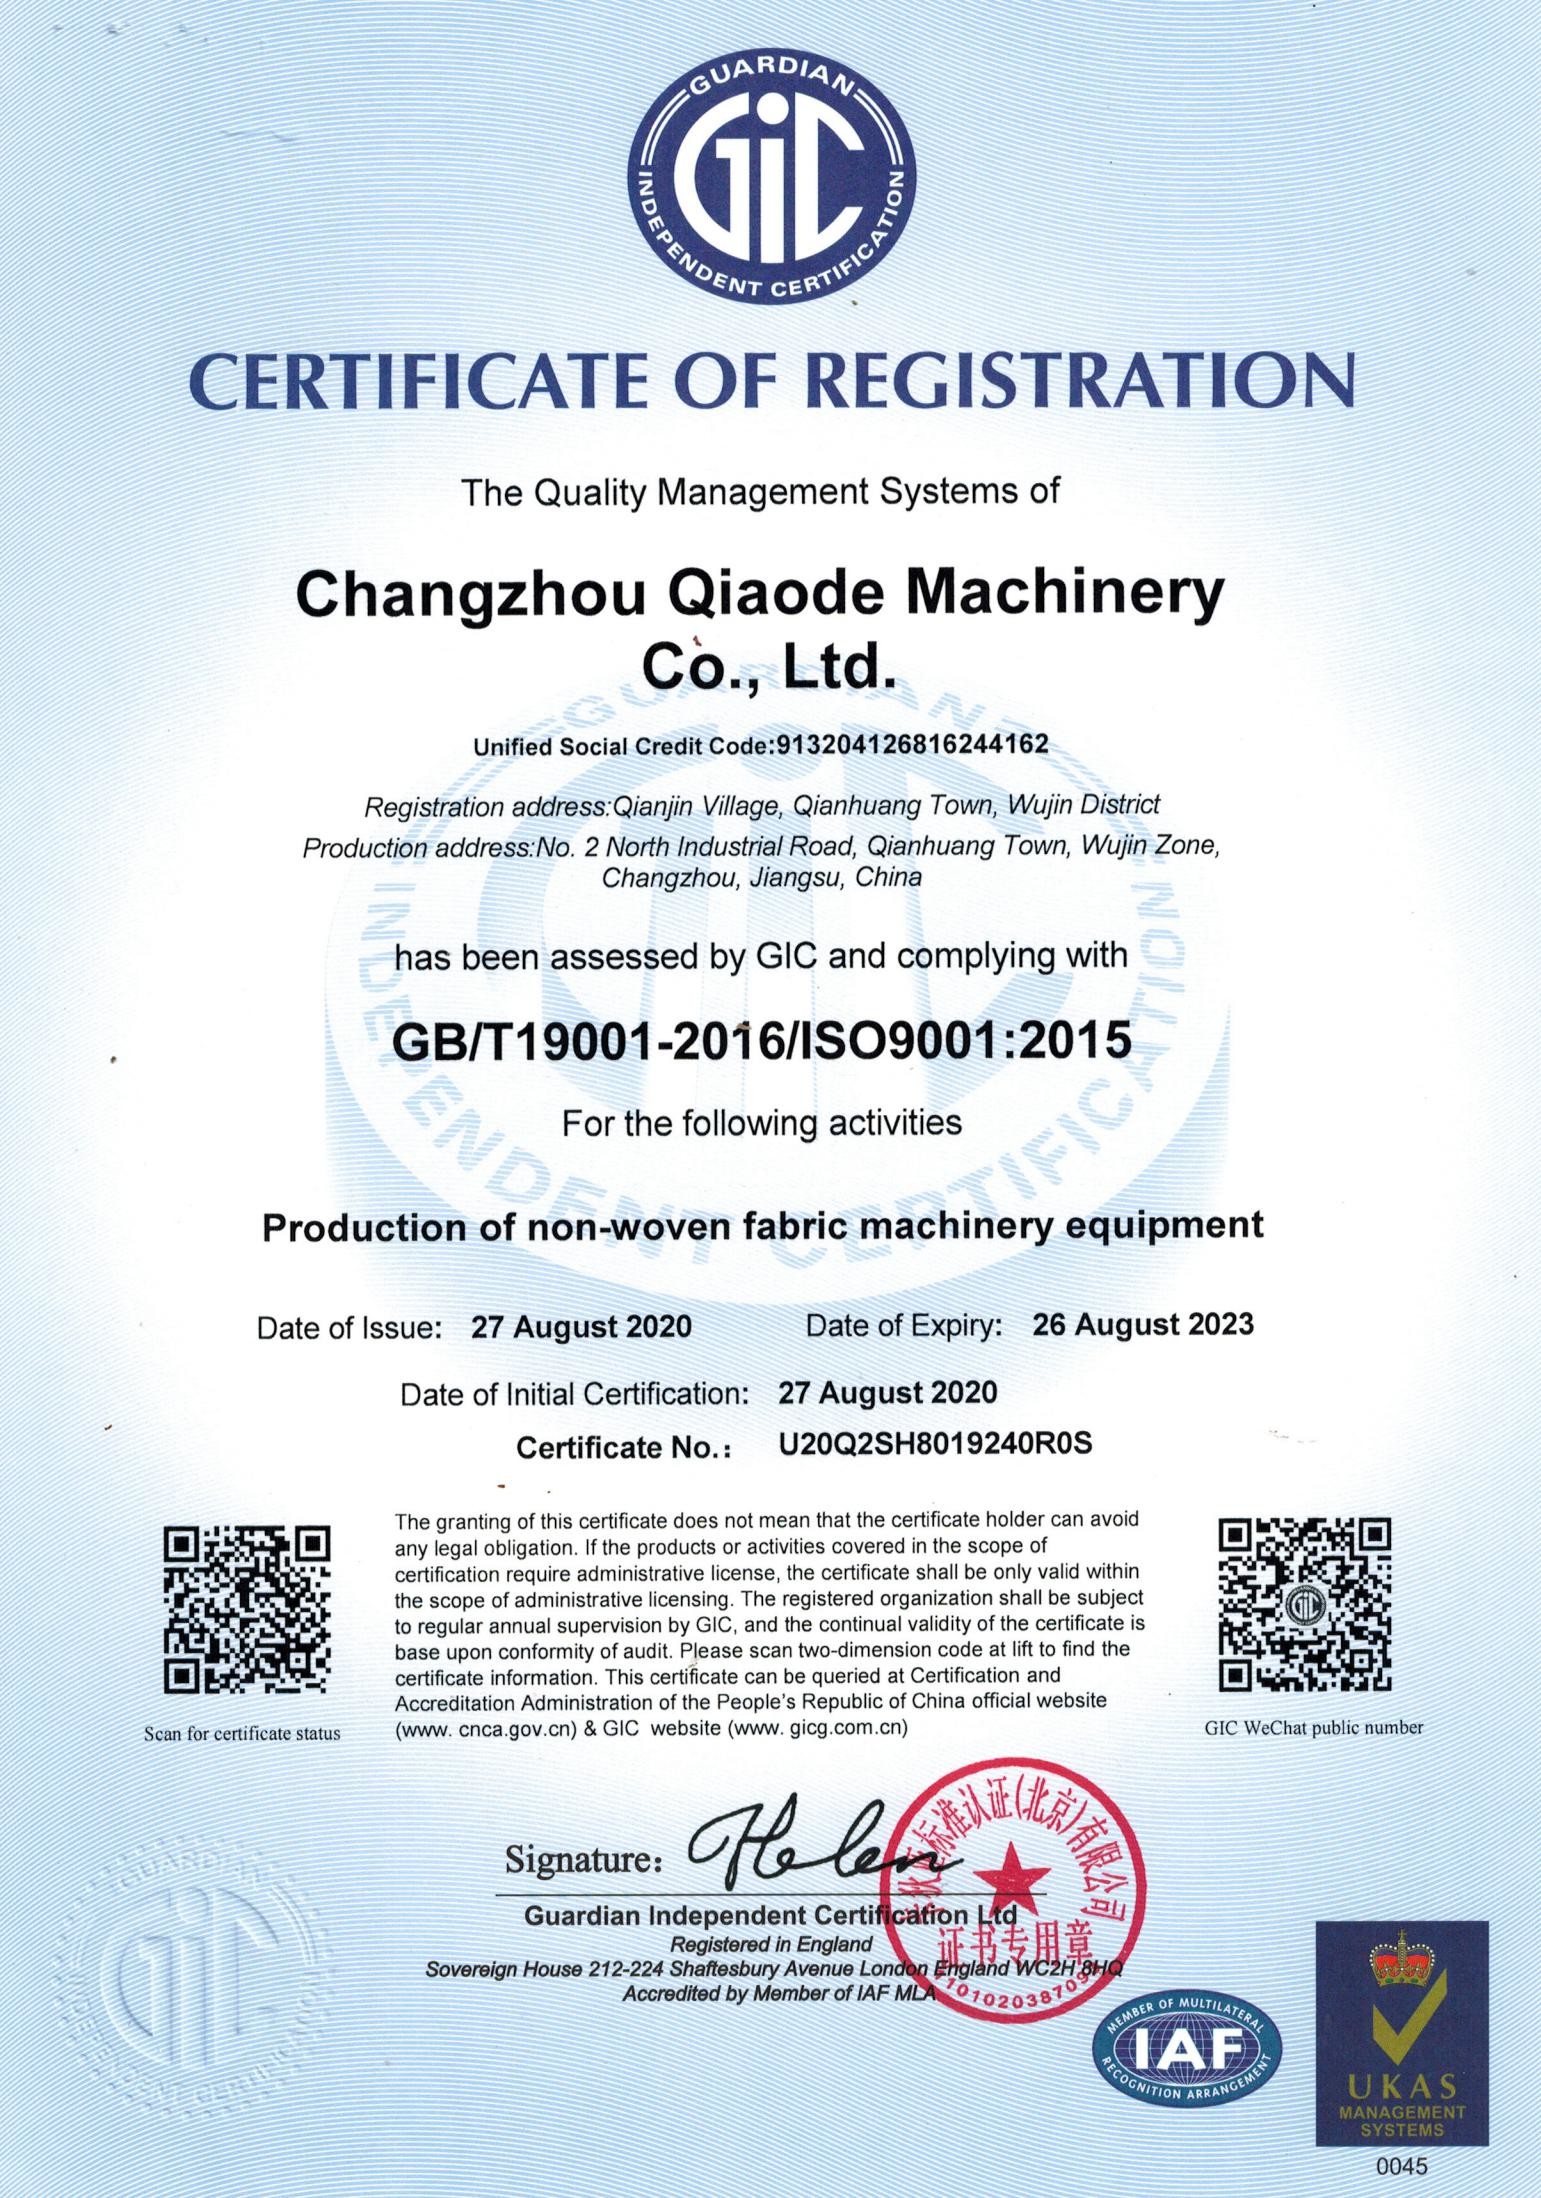 Changzhou Qiaode Machinery Co., Ltd. Certifications